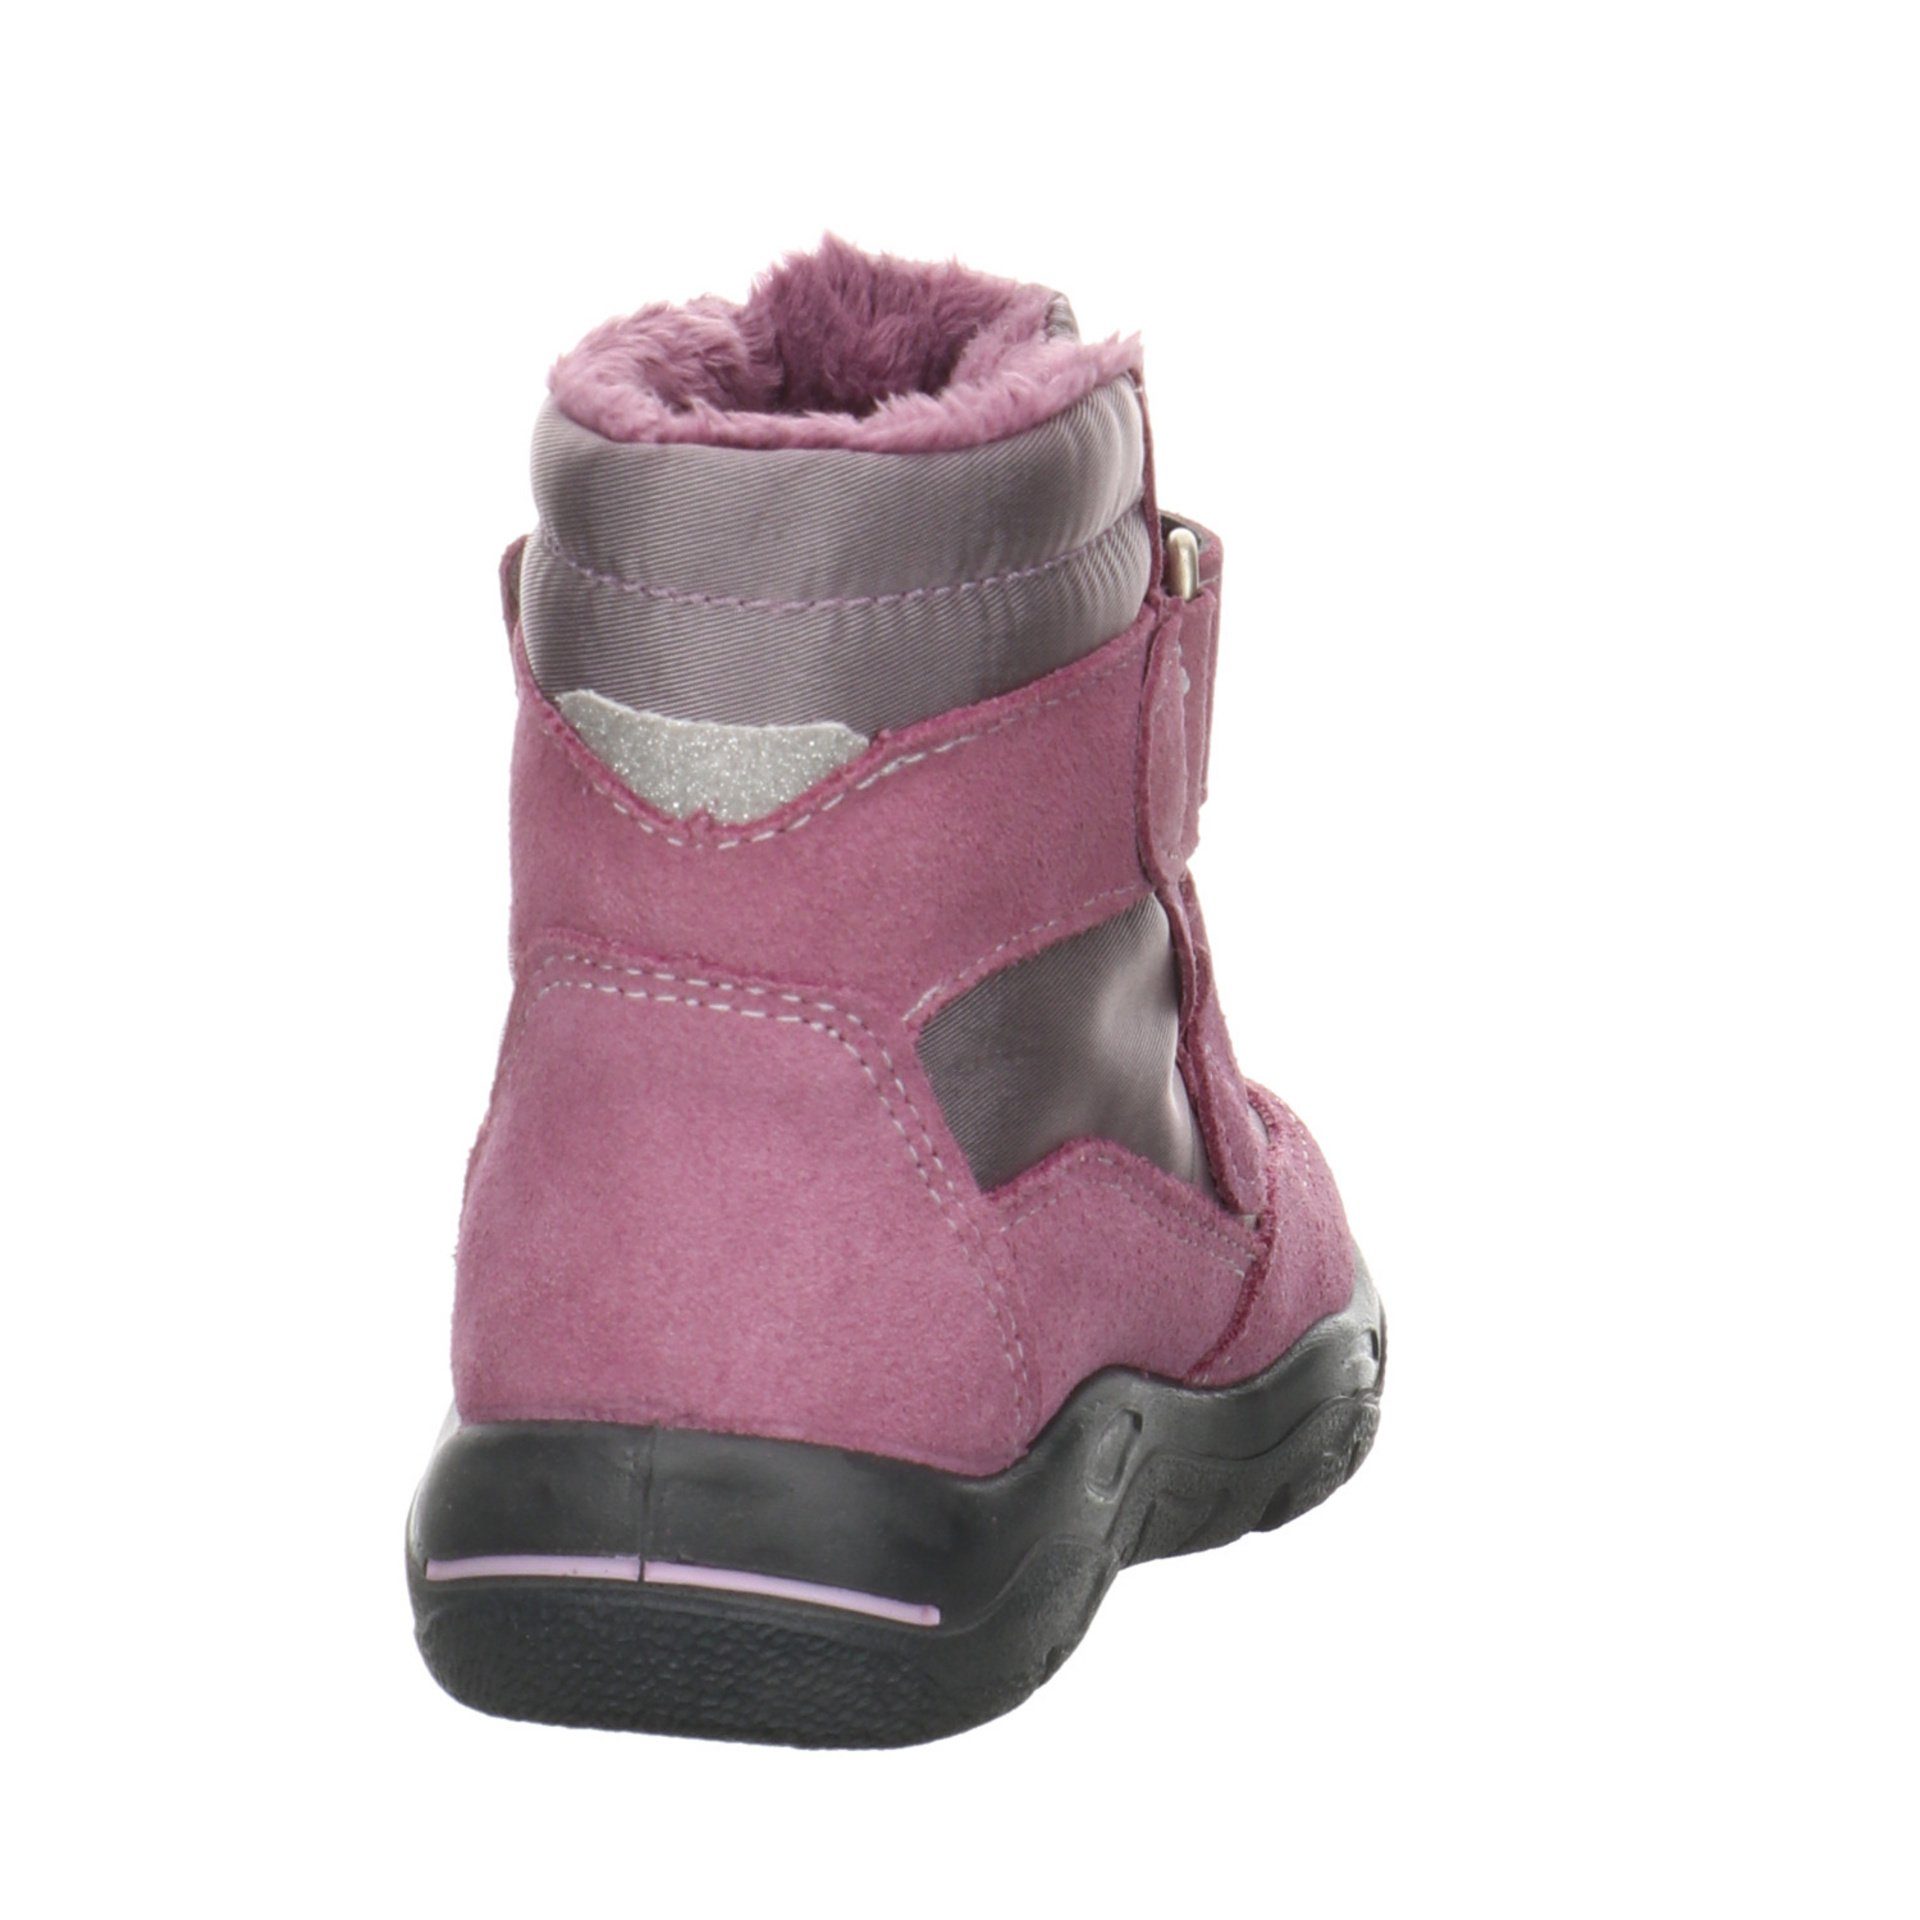 Krabbelschuhe Lauflernschuh Baby Hildie purple Leder-/Textilkombination Boots Ricosta (320) Lauflernschuhe